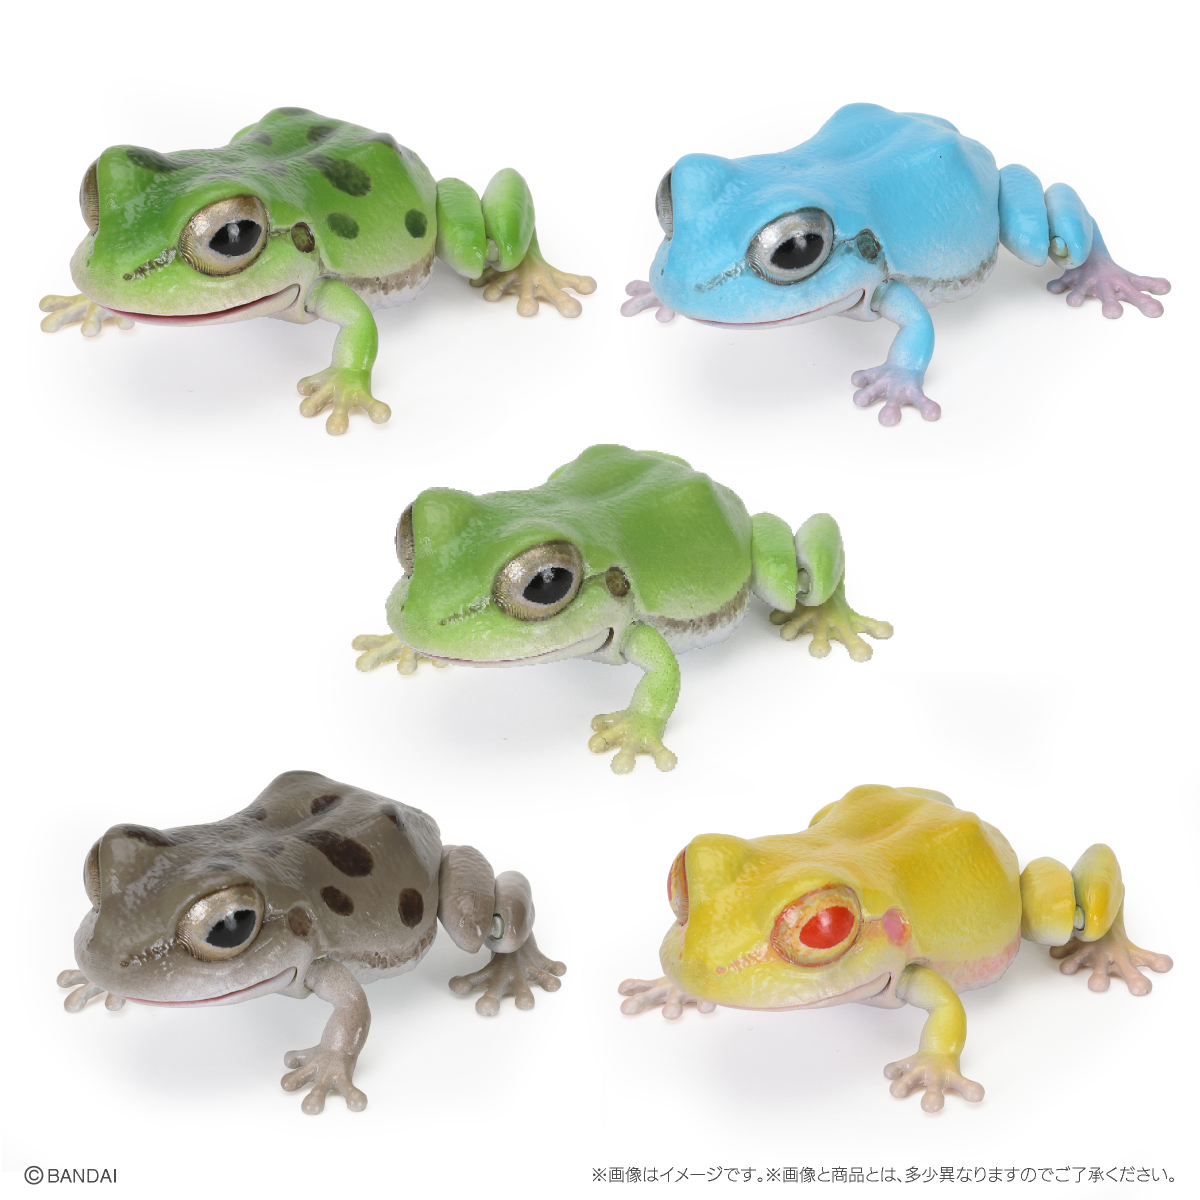 10月预售万代扭蛋生物大图鉴青蛙日本树蛙东北雨蛙摆件-图3